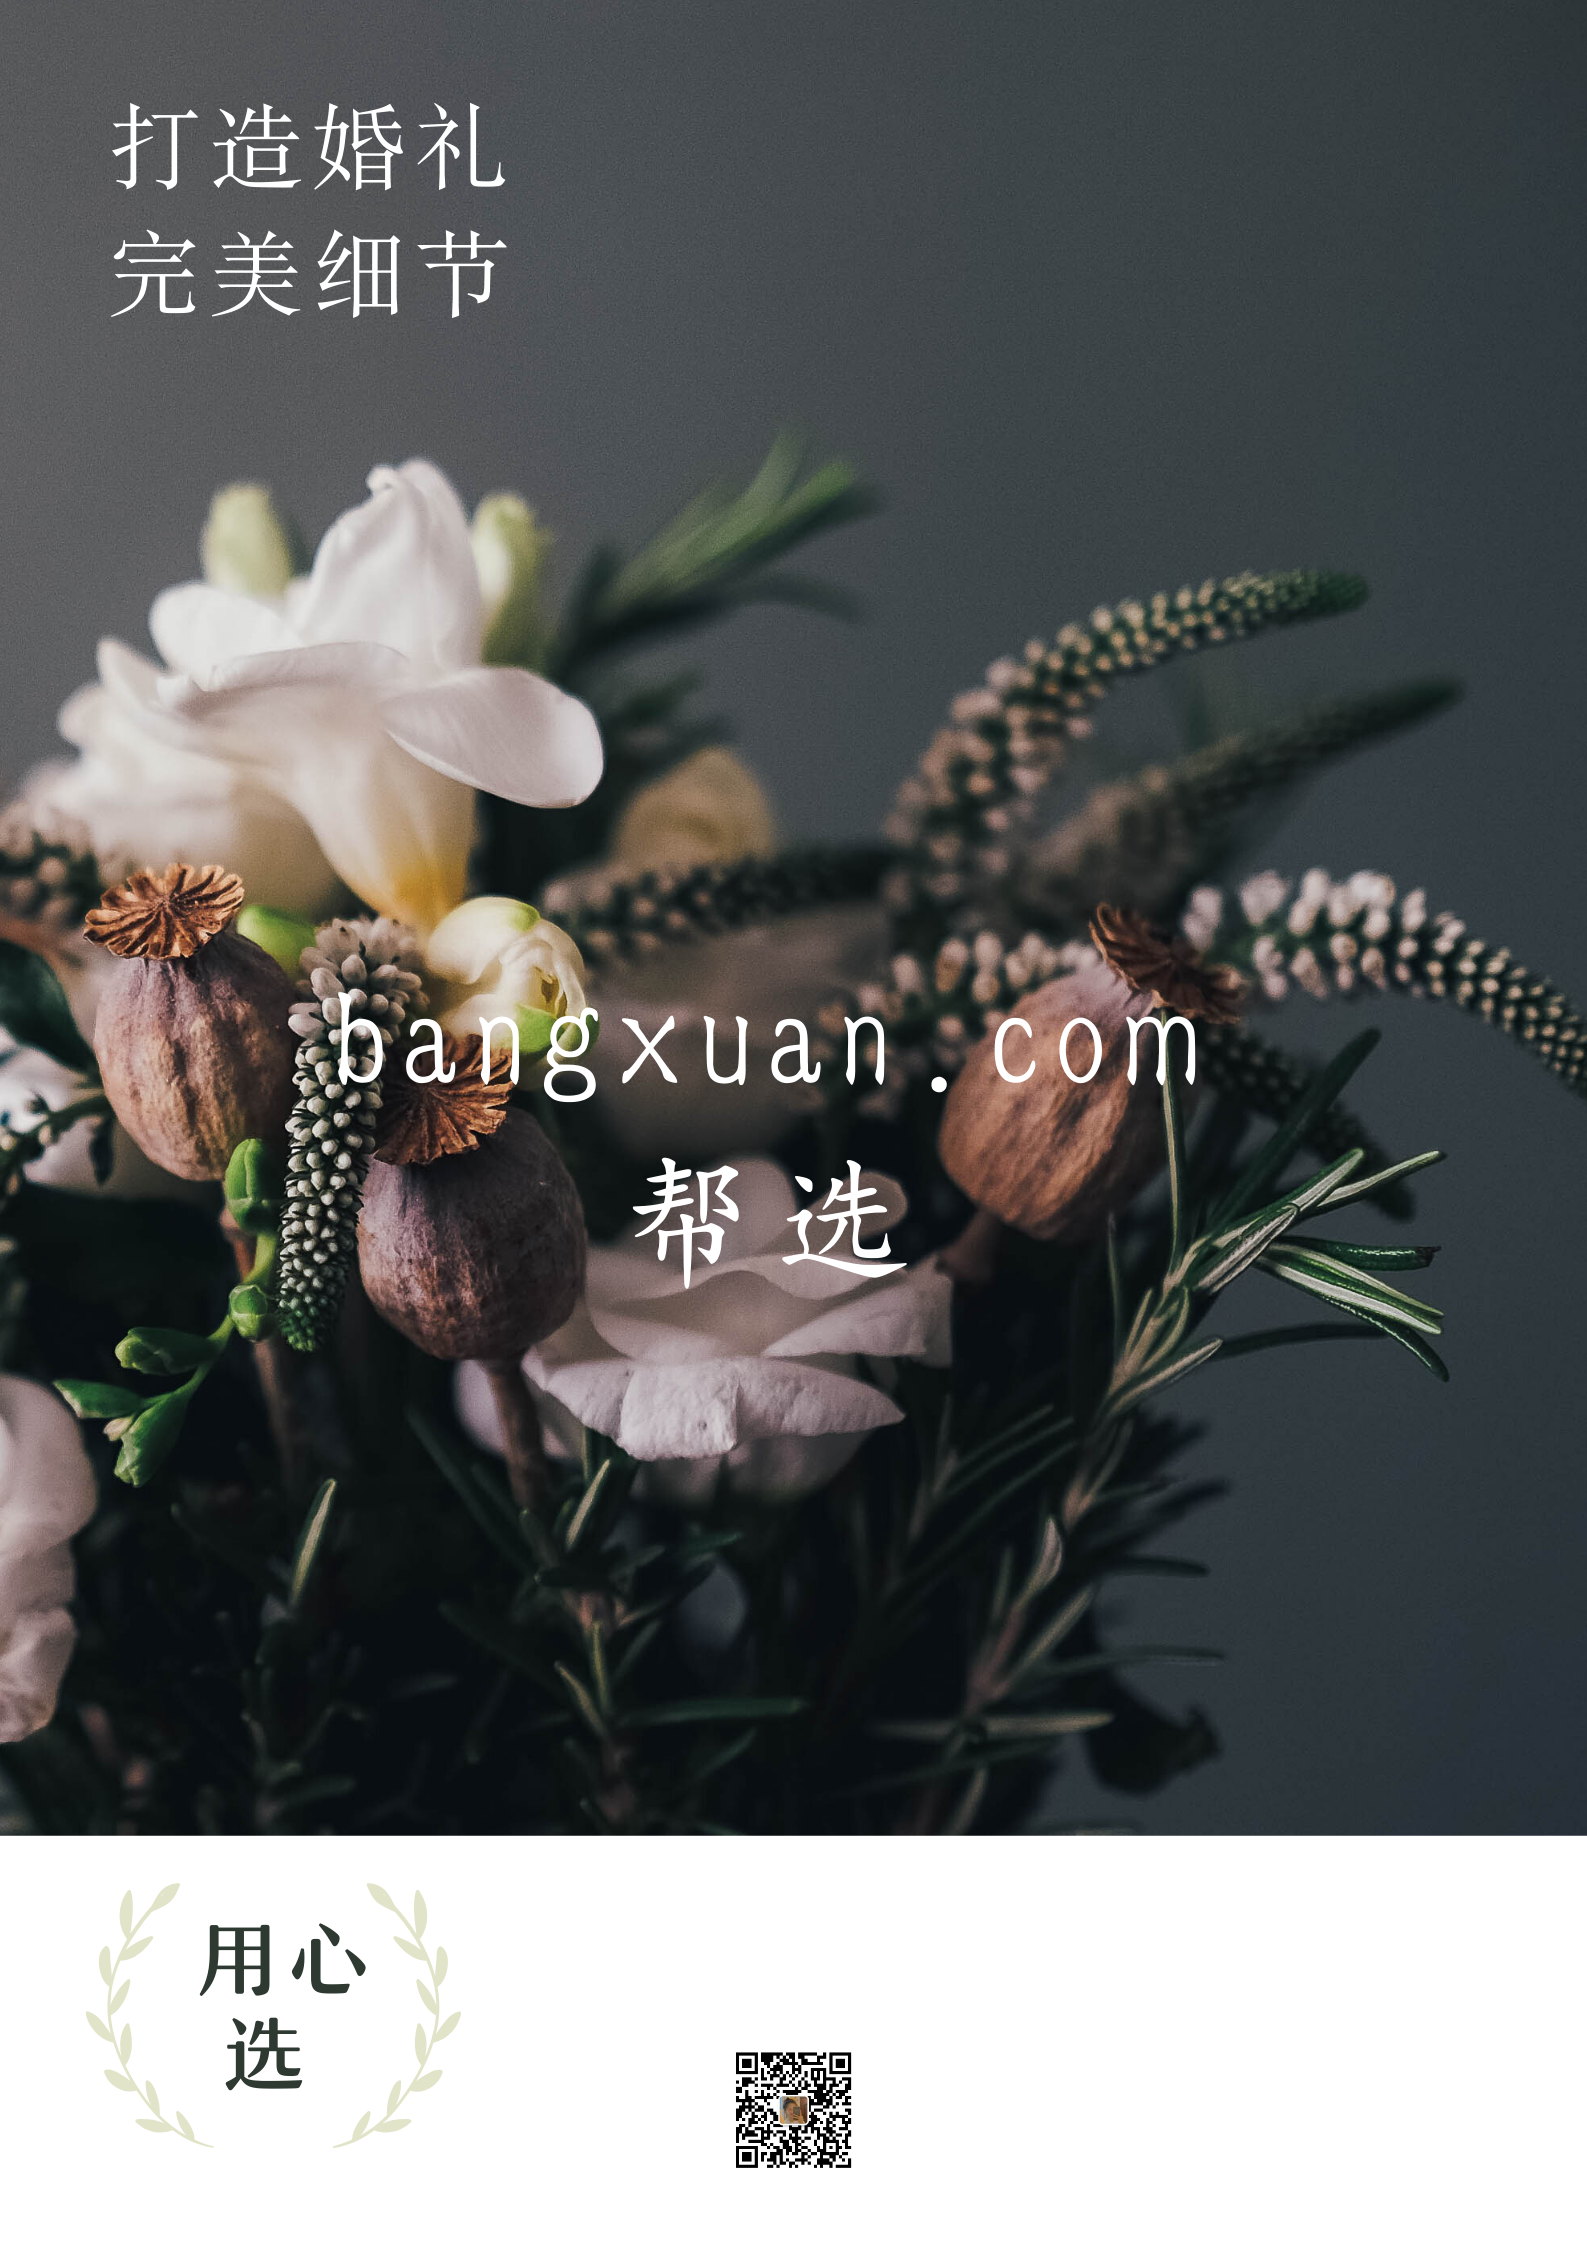 bangxuan.com